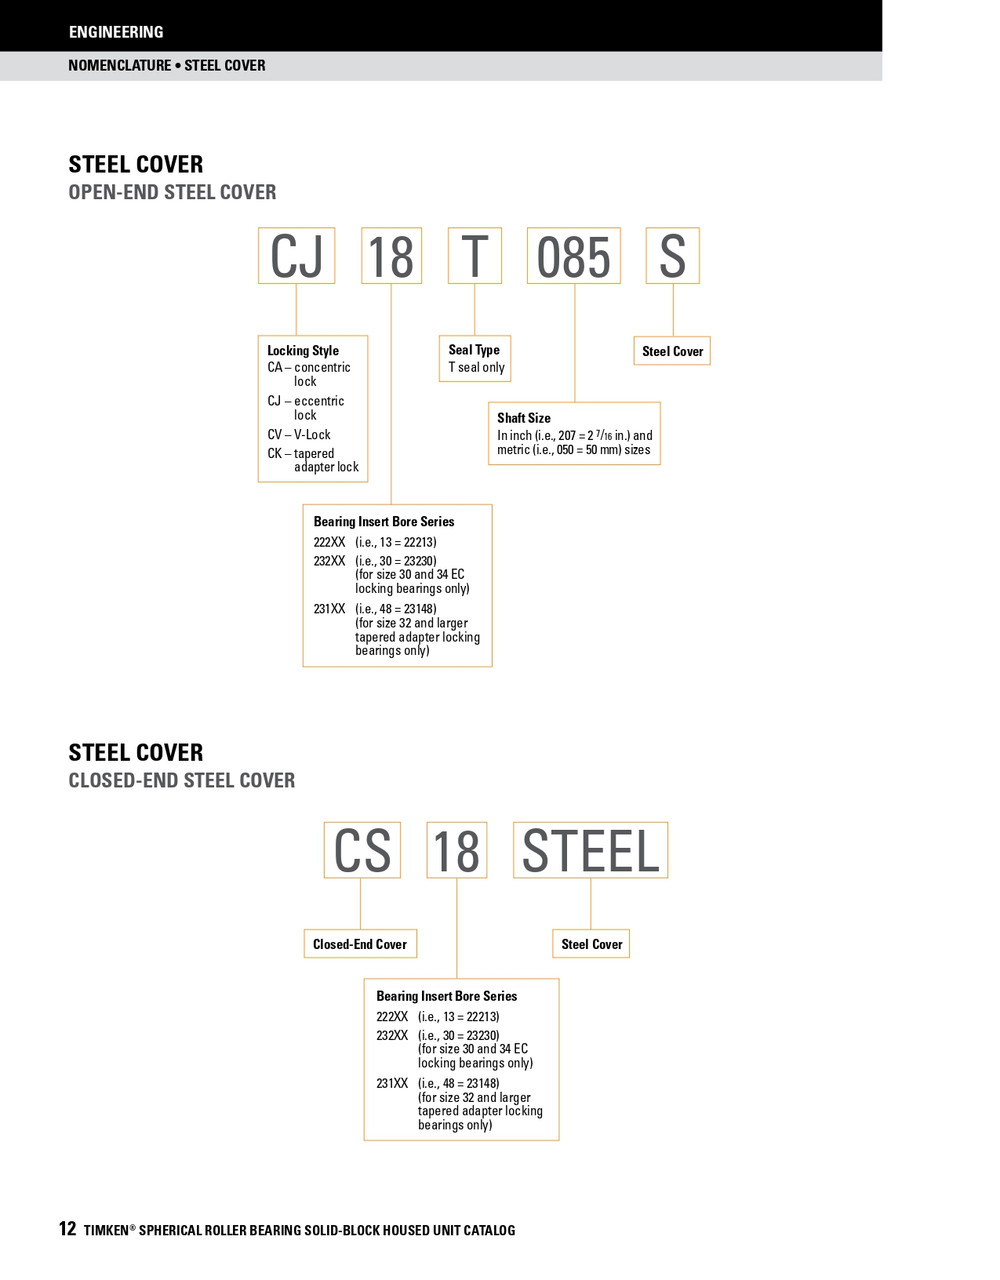 3-15/16" Timken SRB Steel Open End Cover w/Teflon Seal - TA/DV Taper Lock Bushing Type  CK22T315S